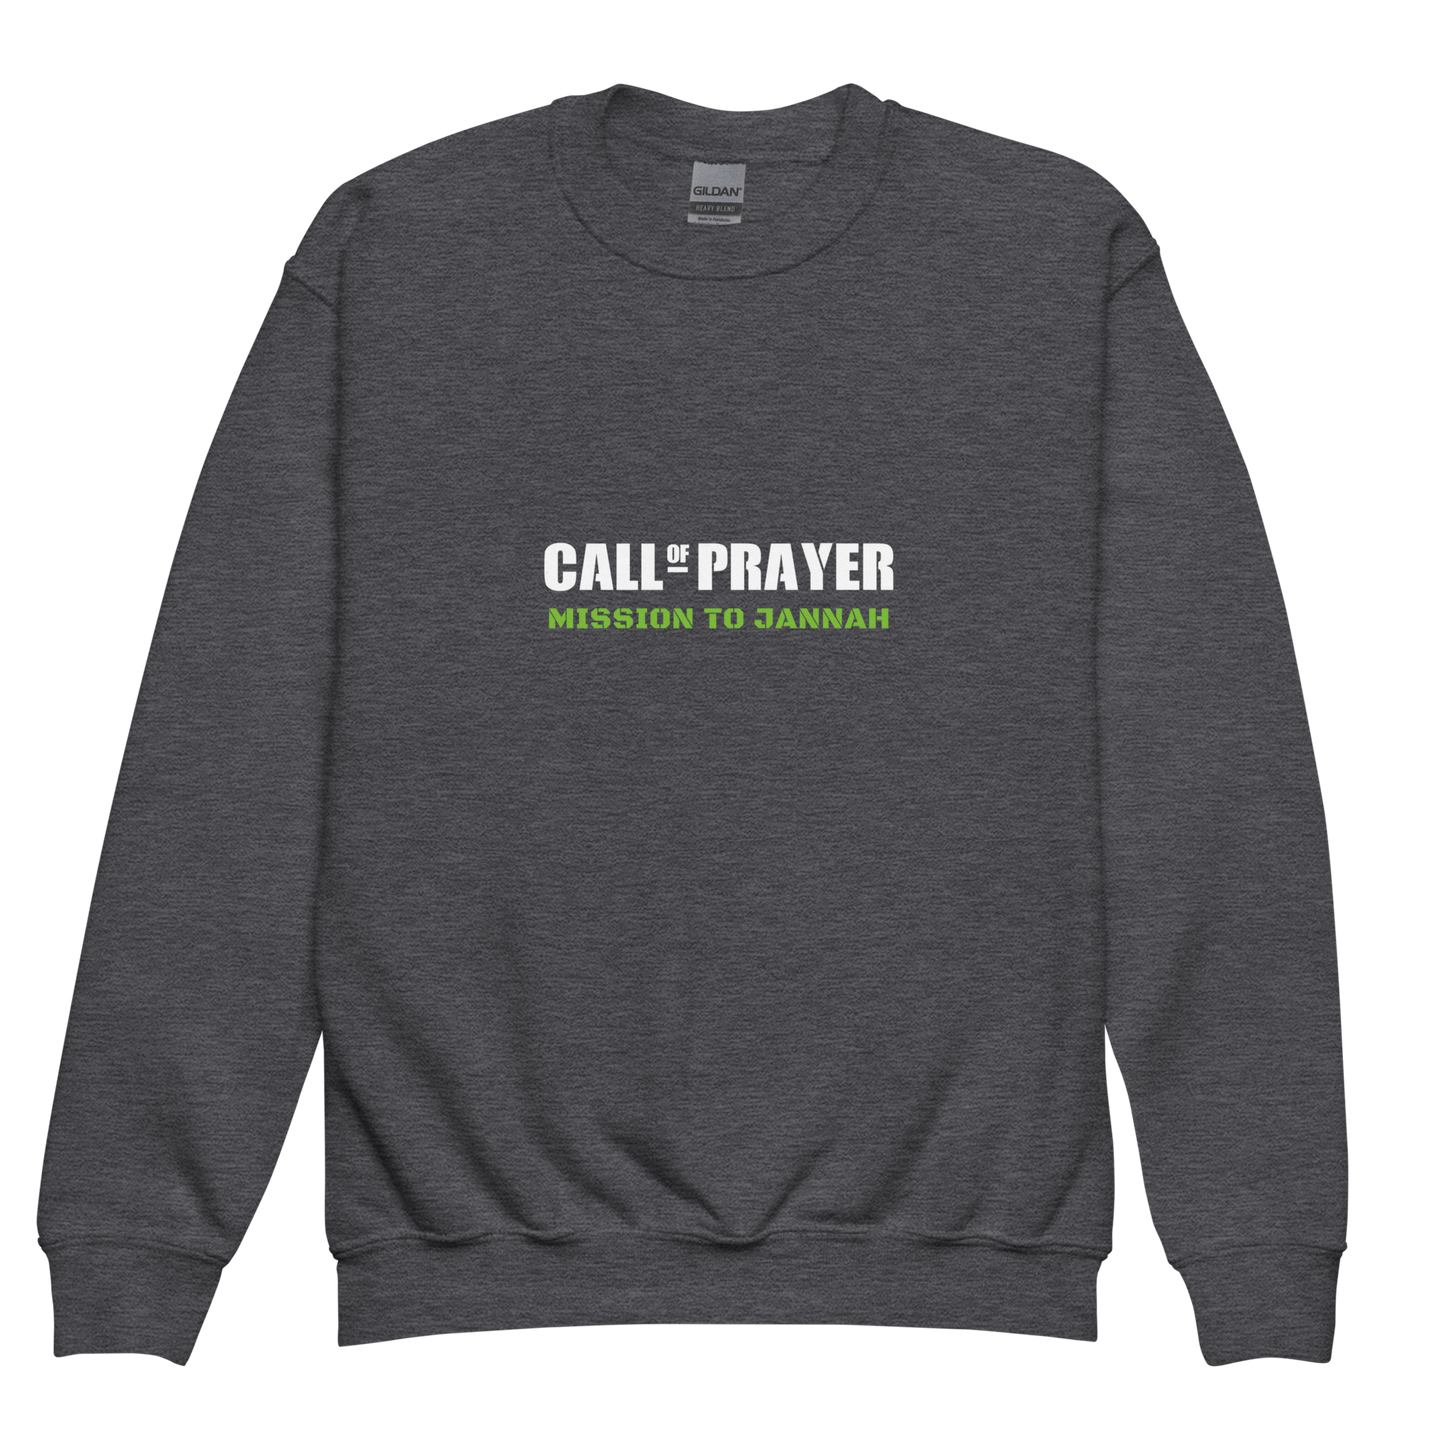 CHILDREN's Crewneck Sweatshirt - CALL OF PRAYER - White/Green